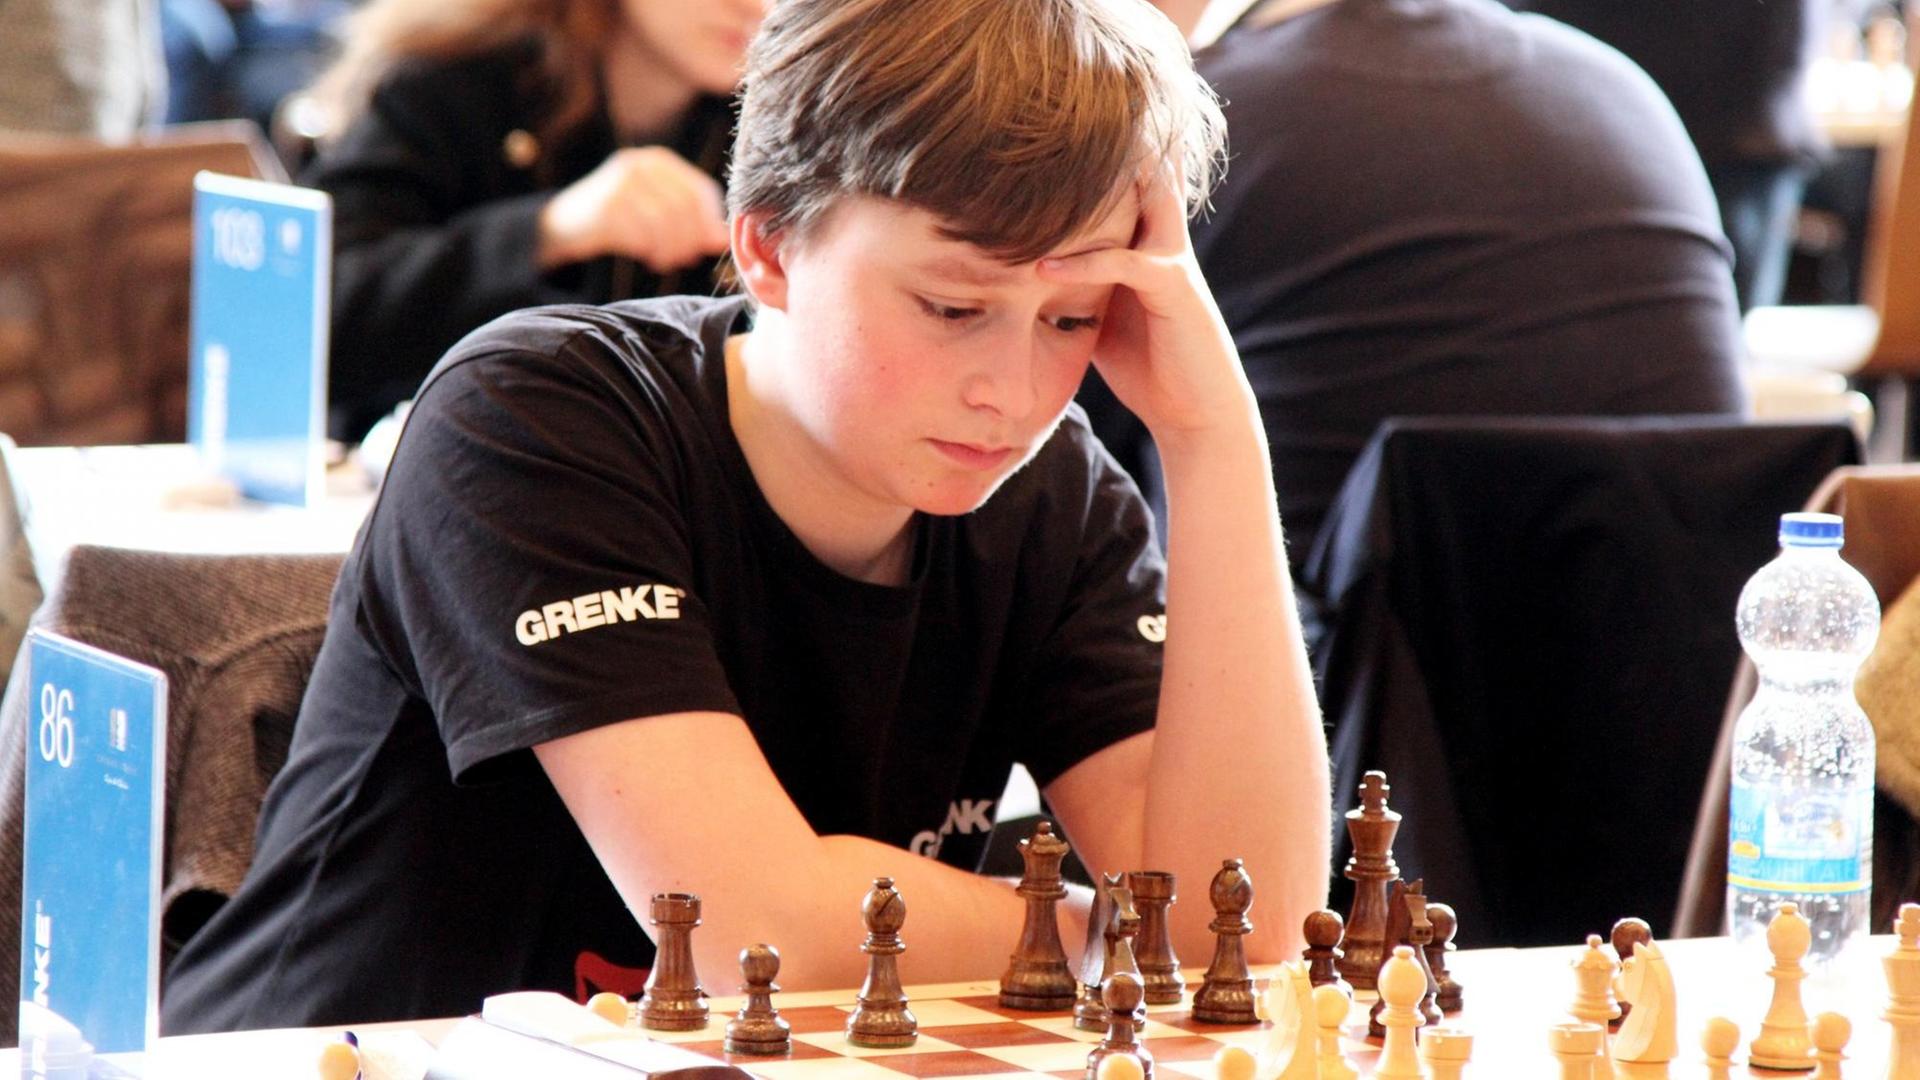 Vincent Keymer während des Schachturniers Grenke Chess Open 2018, das er gewinnen konnte.